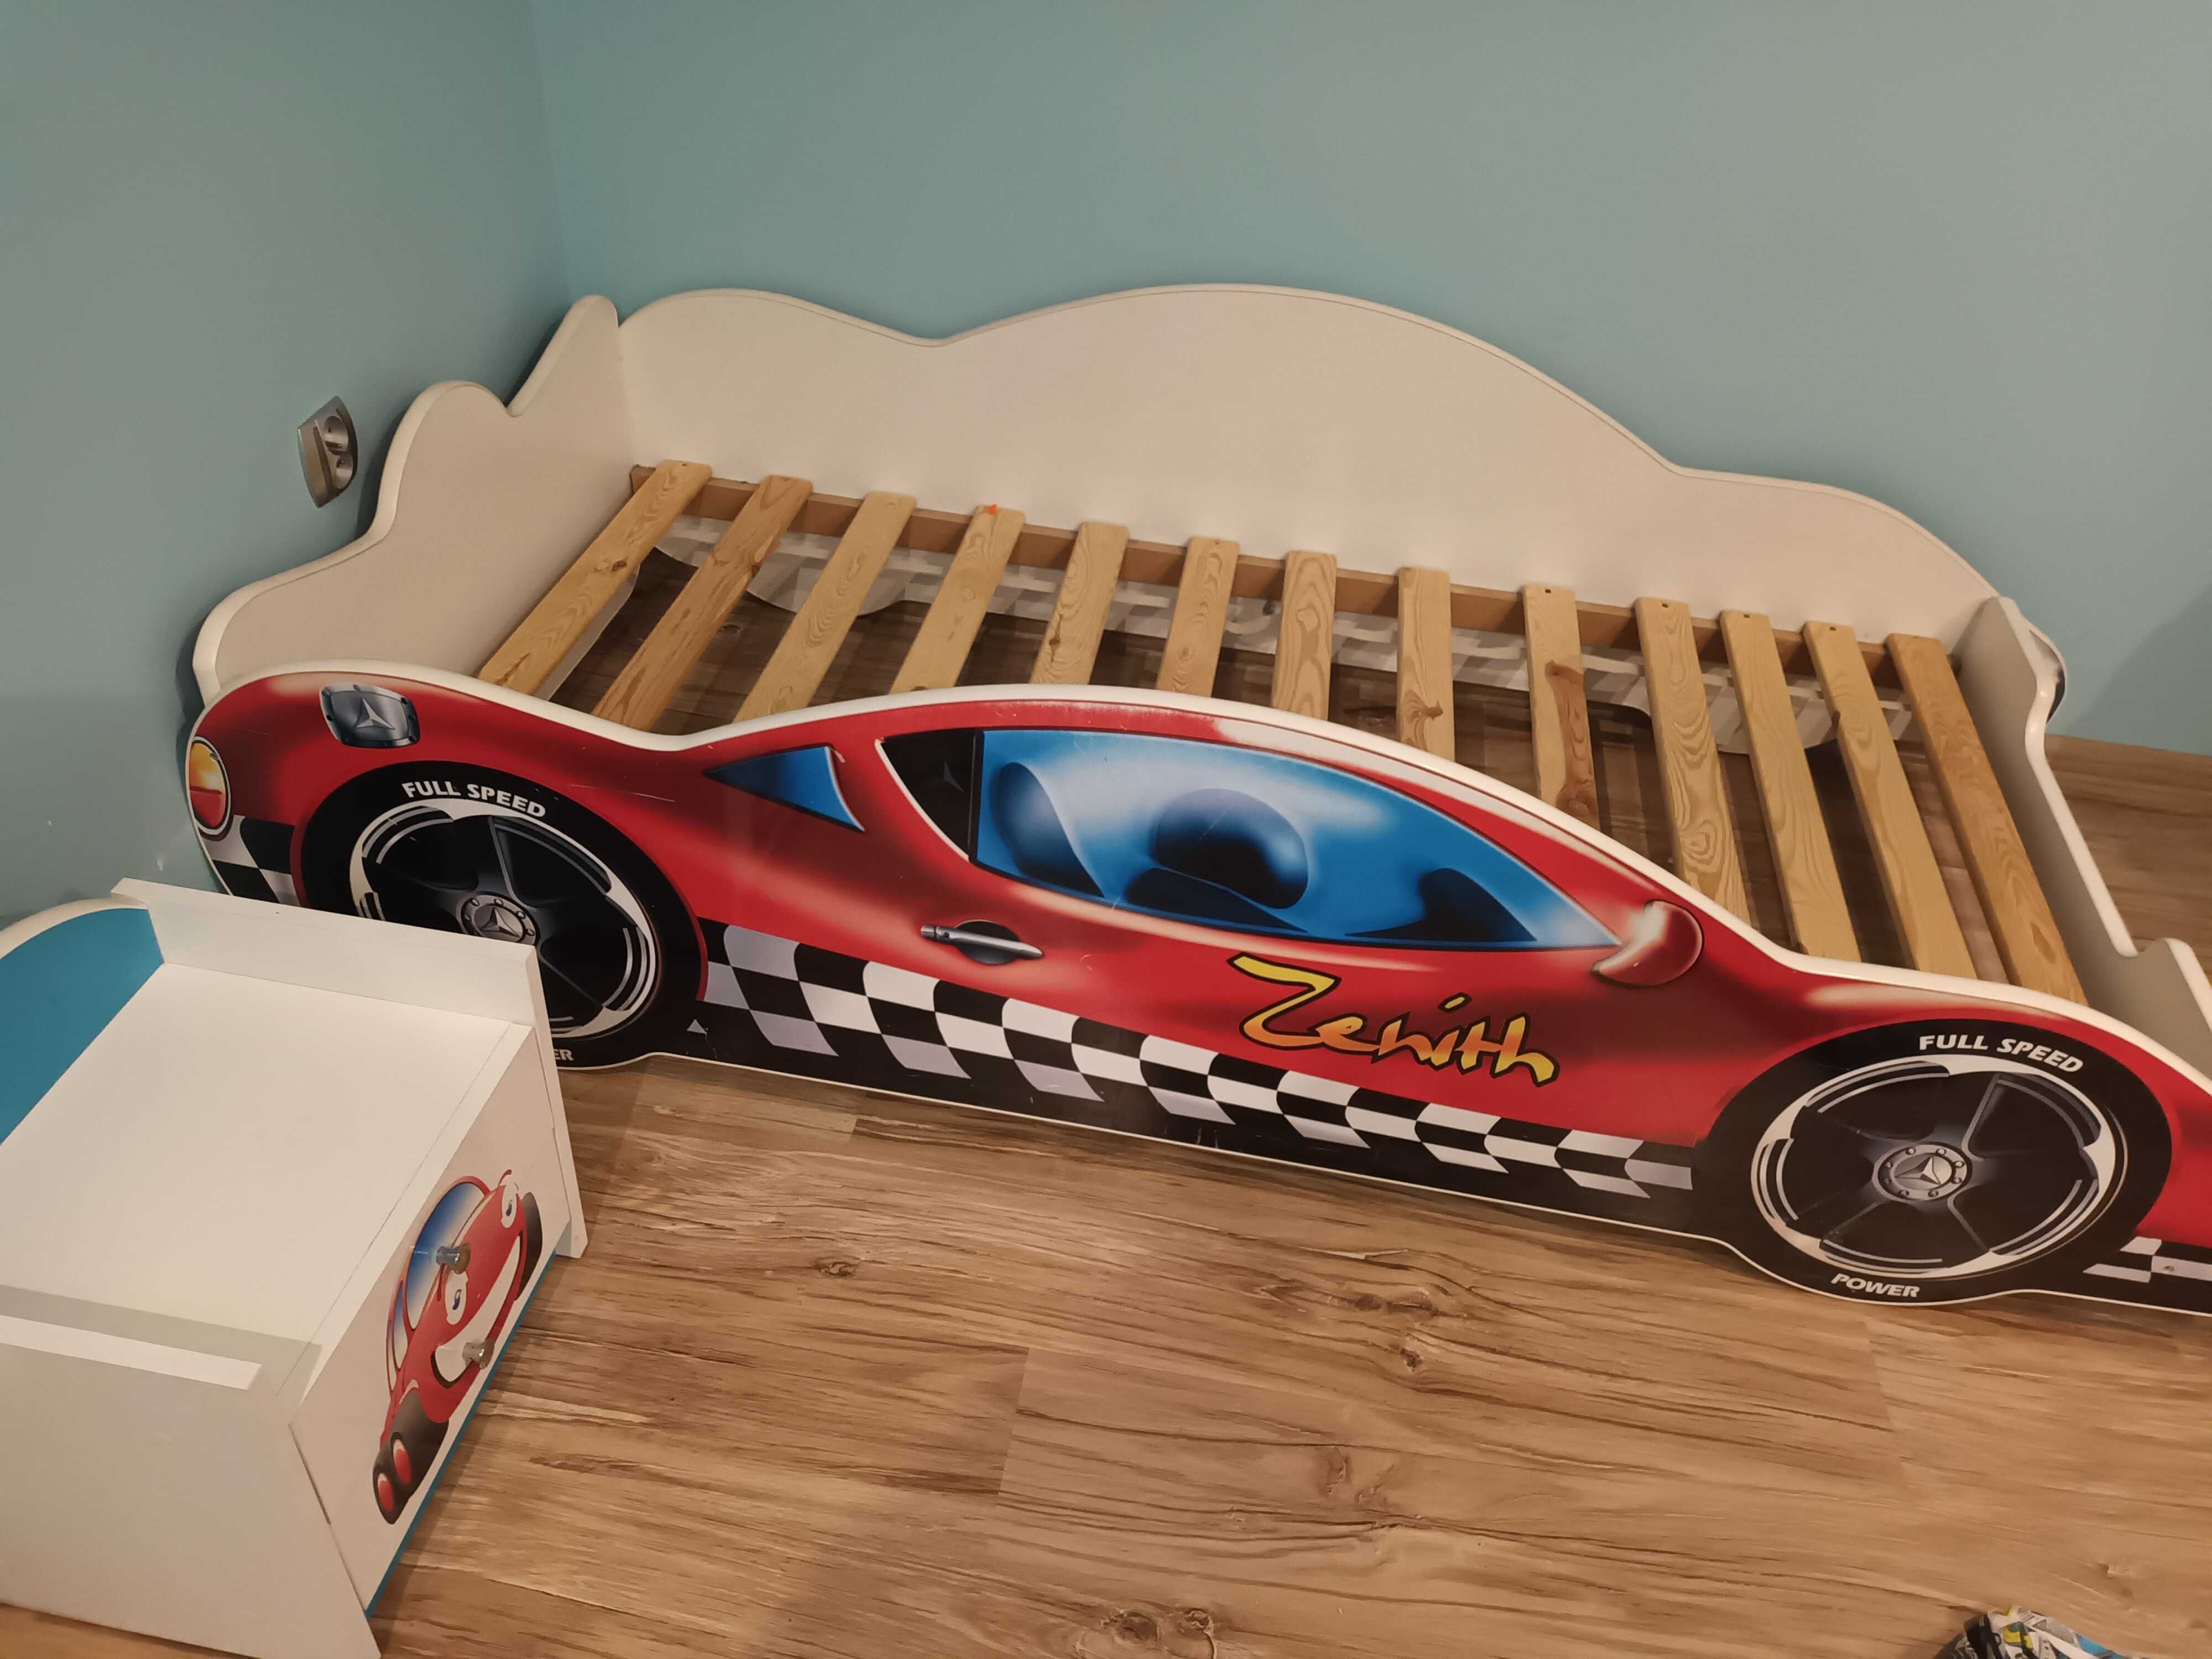 Łóżko dla chłopca formuła,samochód i szafka nocna